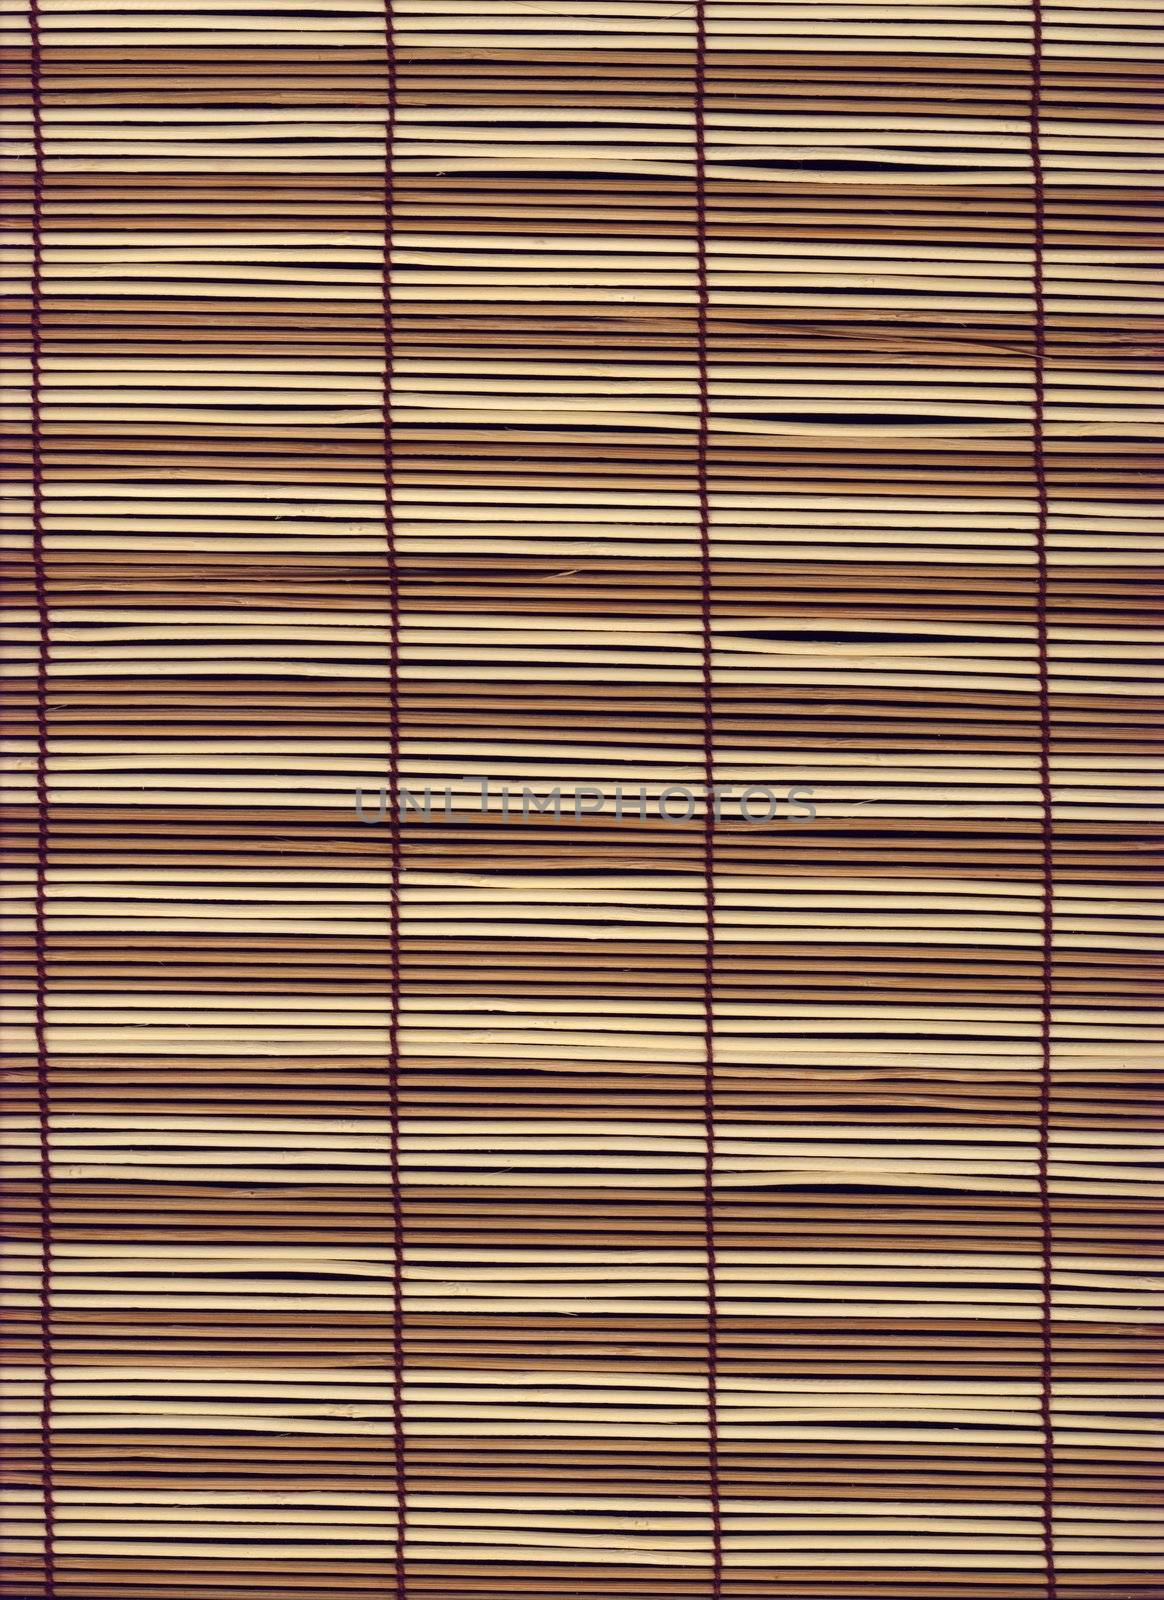 Photo of a wooden mat (texture)